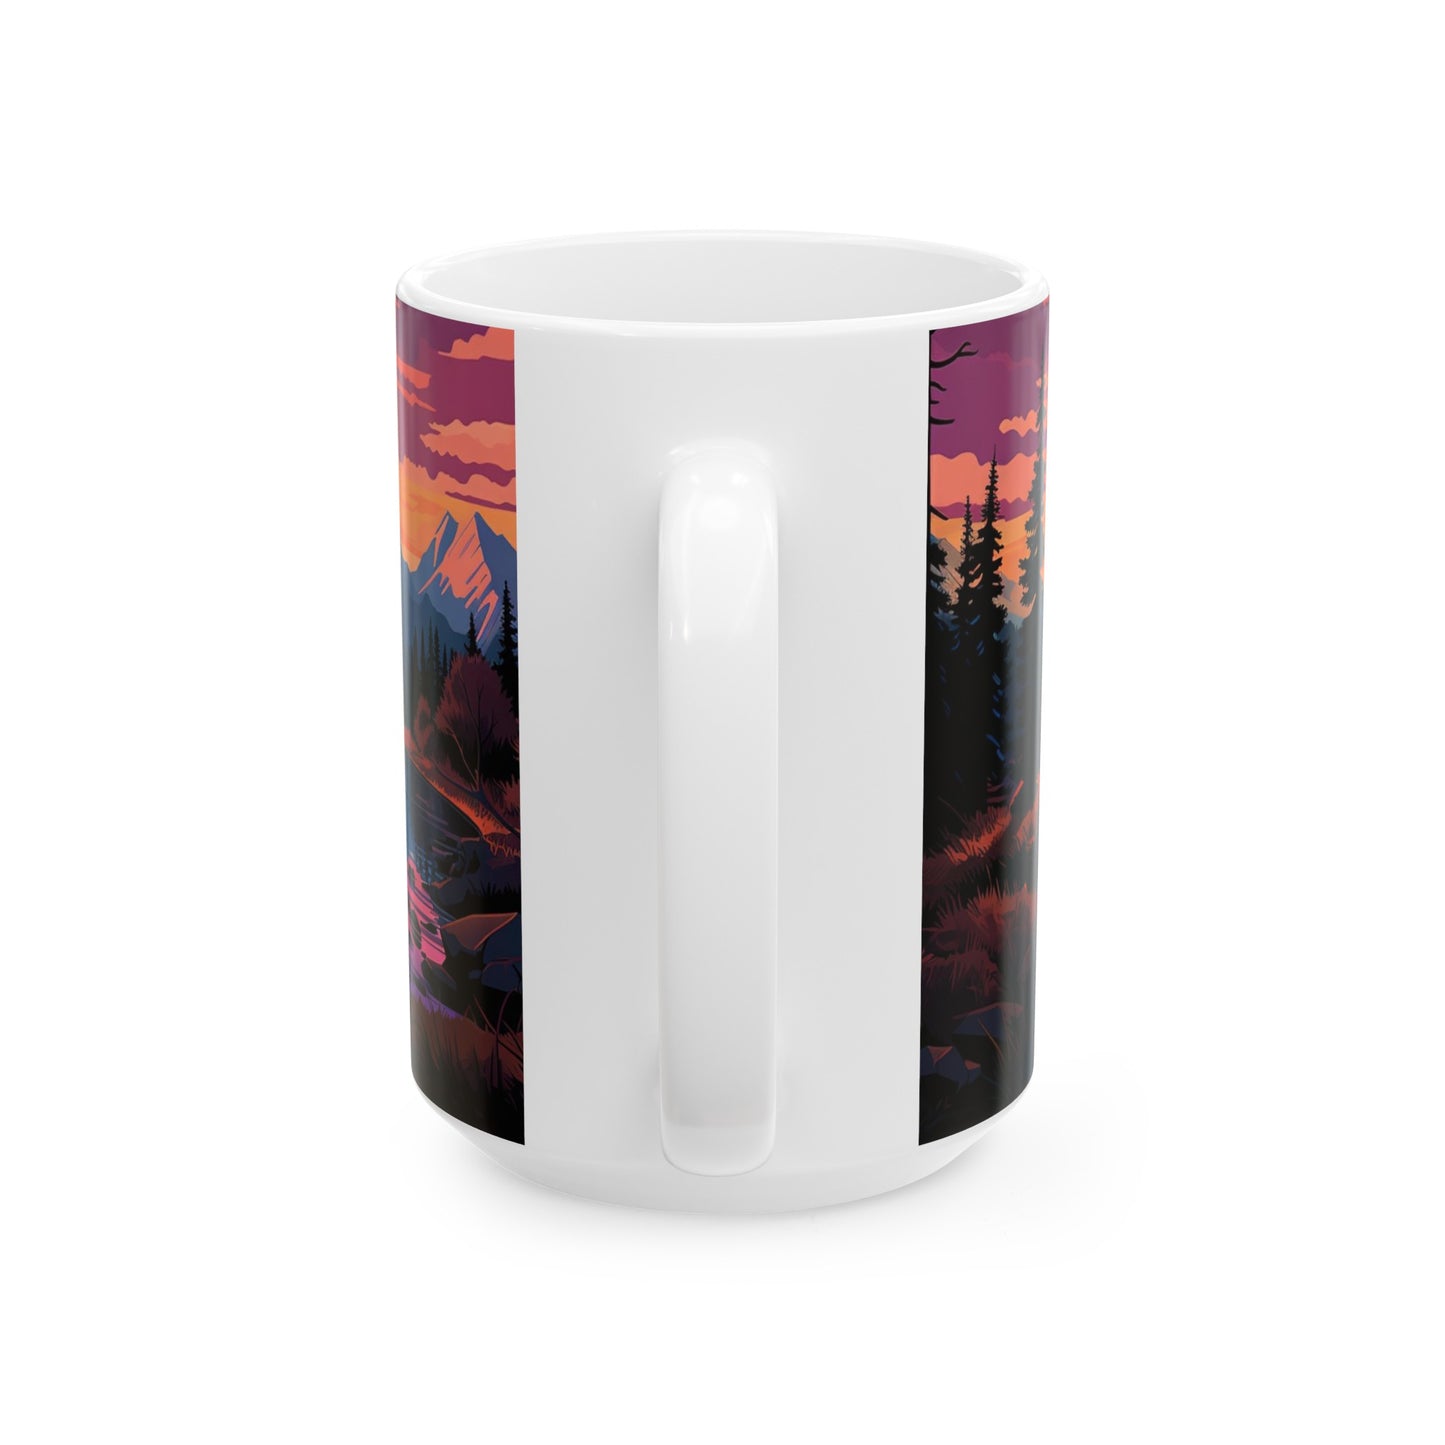 Lake Clark National Park Mug | White Ceramic Mug (11oz, 15oz)